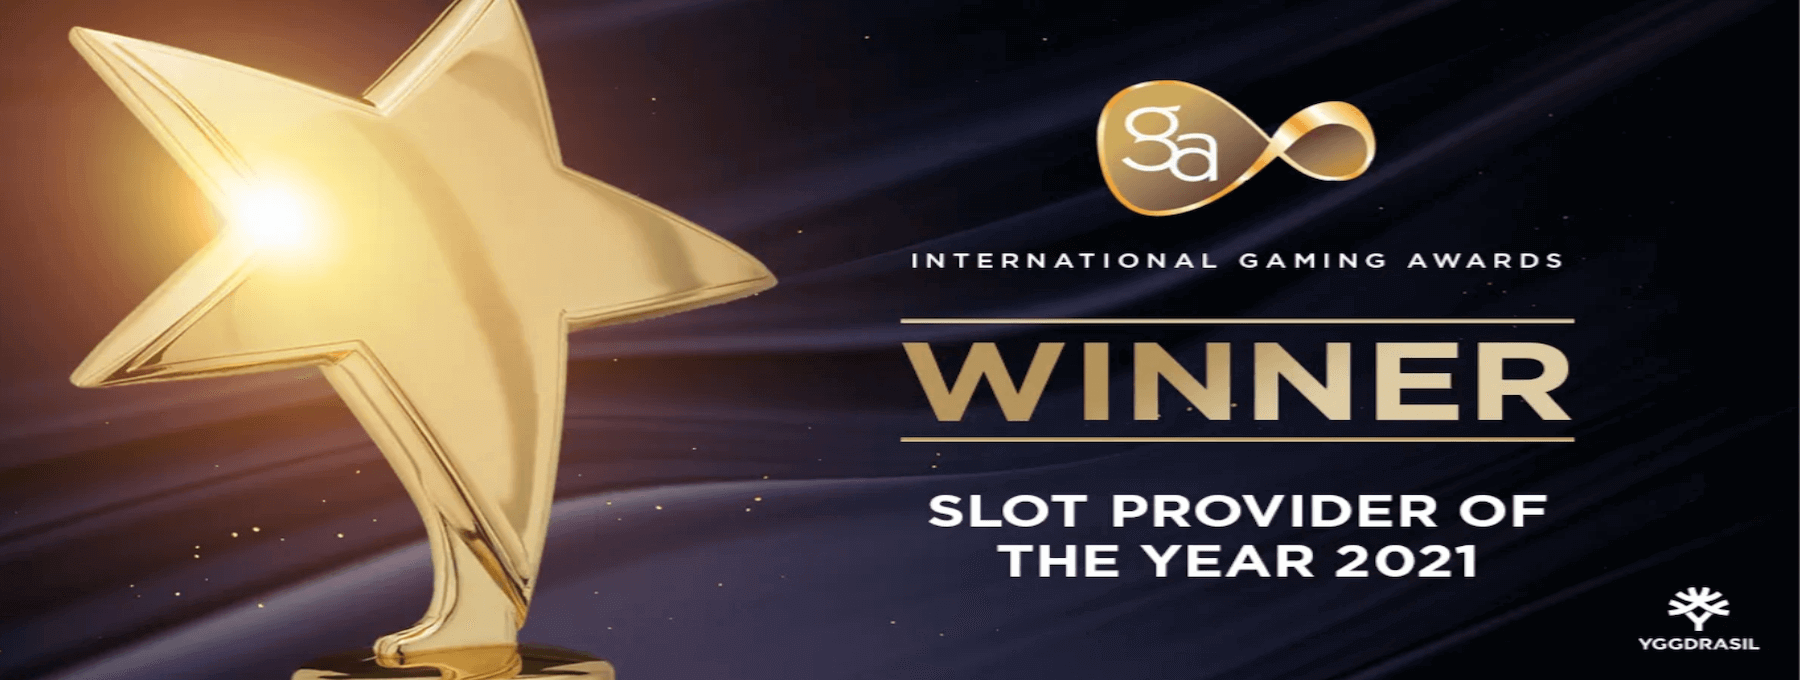 Yggdrasil named Slot Provider of the Year at the International Gaming Awards